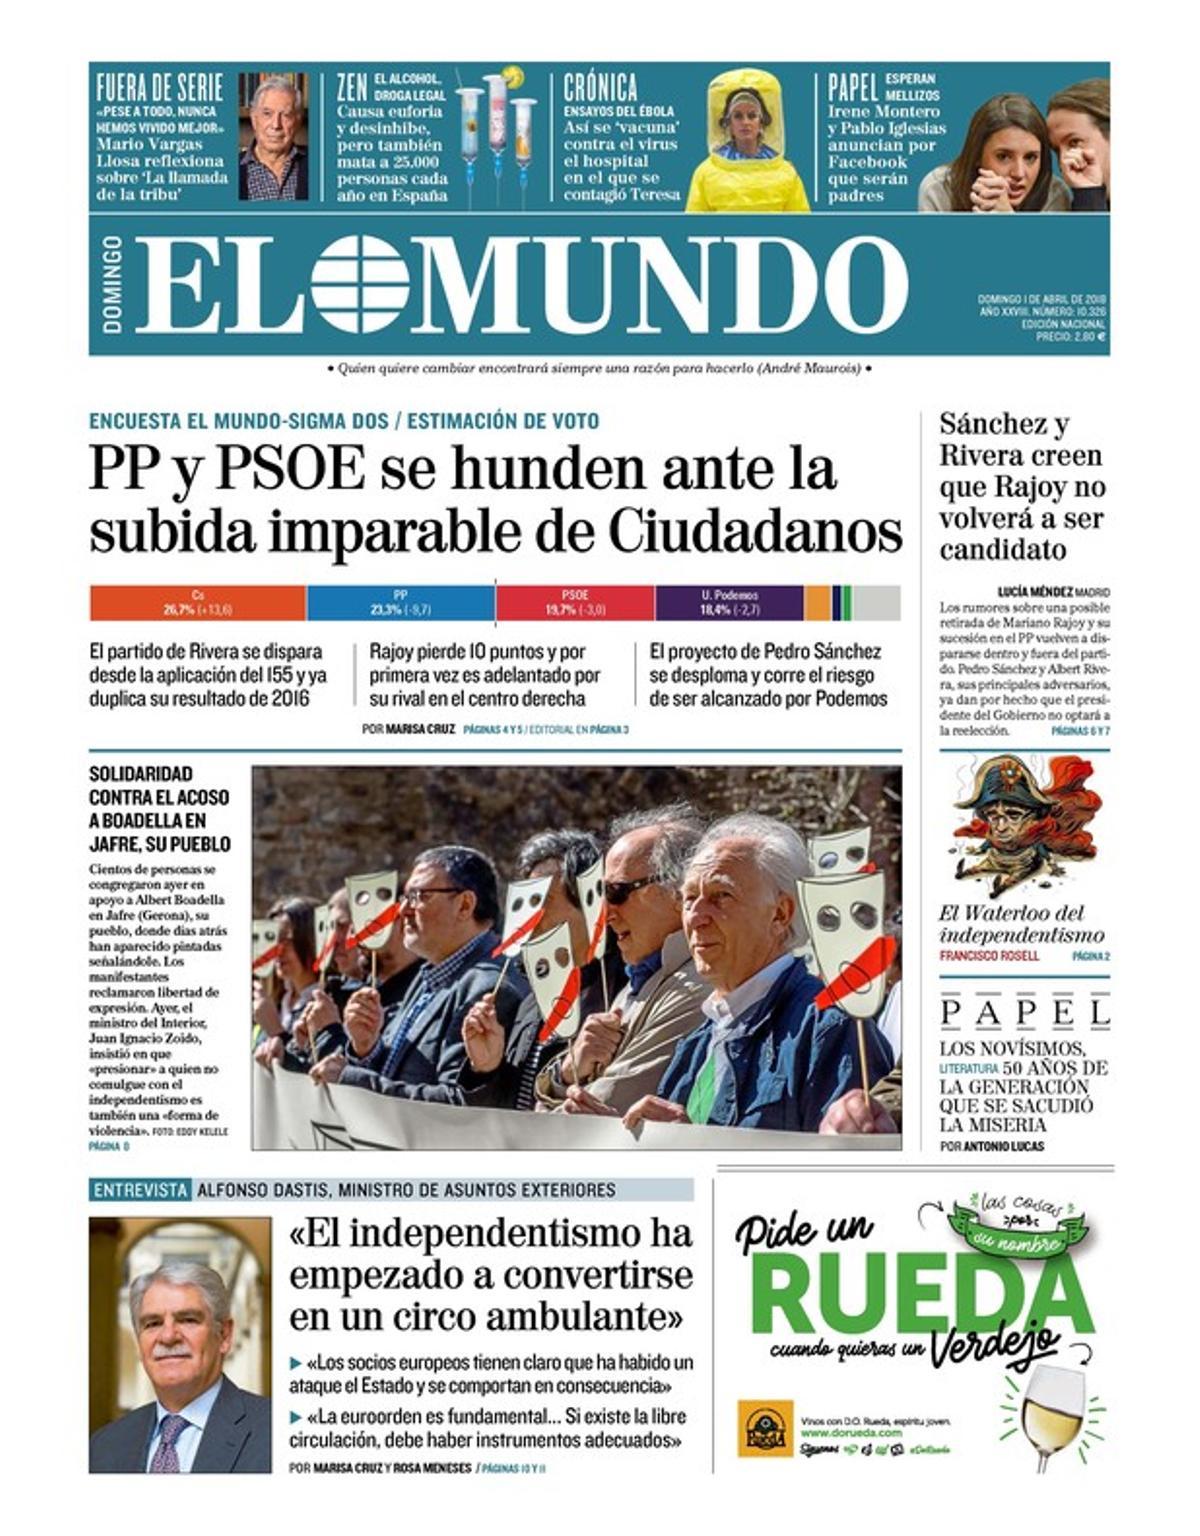 PP y PSOE se hunden ante Cs (El Mundo) y se considera el relevo de Rajoy (El País)